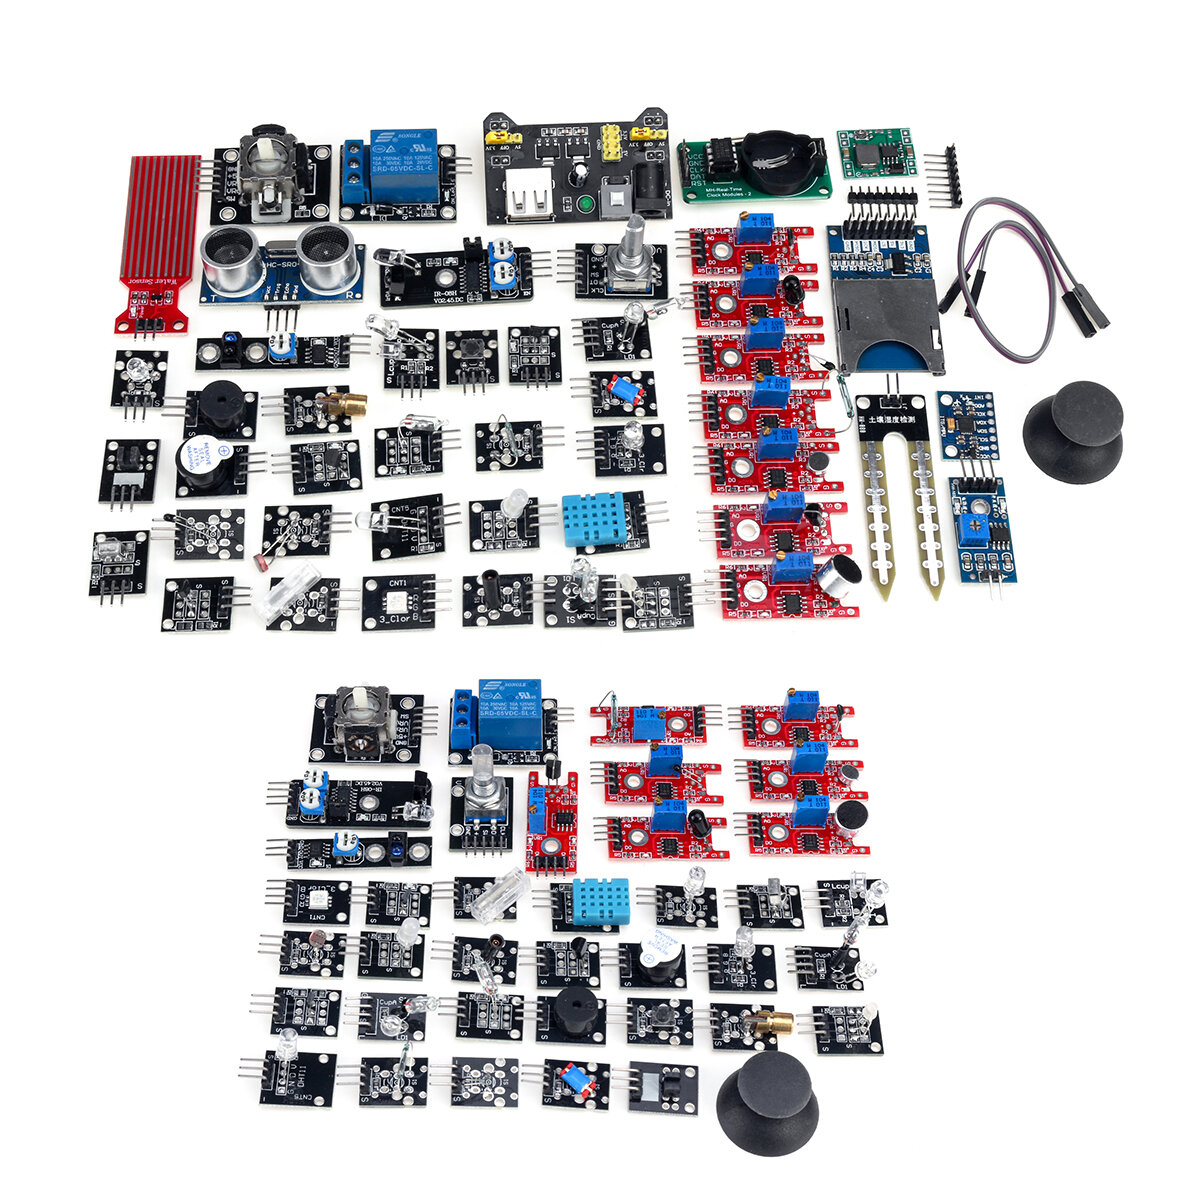 37 Sensor Kit 45 In 1 Sensor Module Starter Kit Updated For Arduino Education 